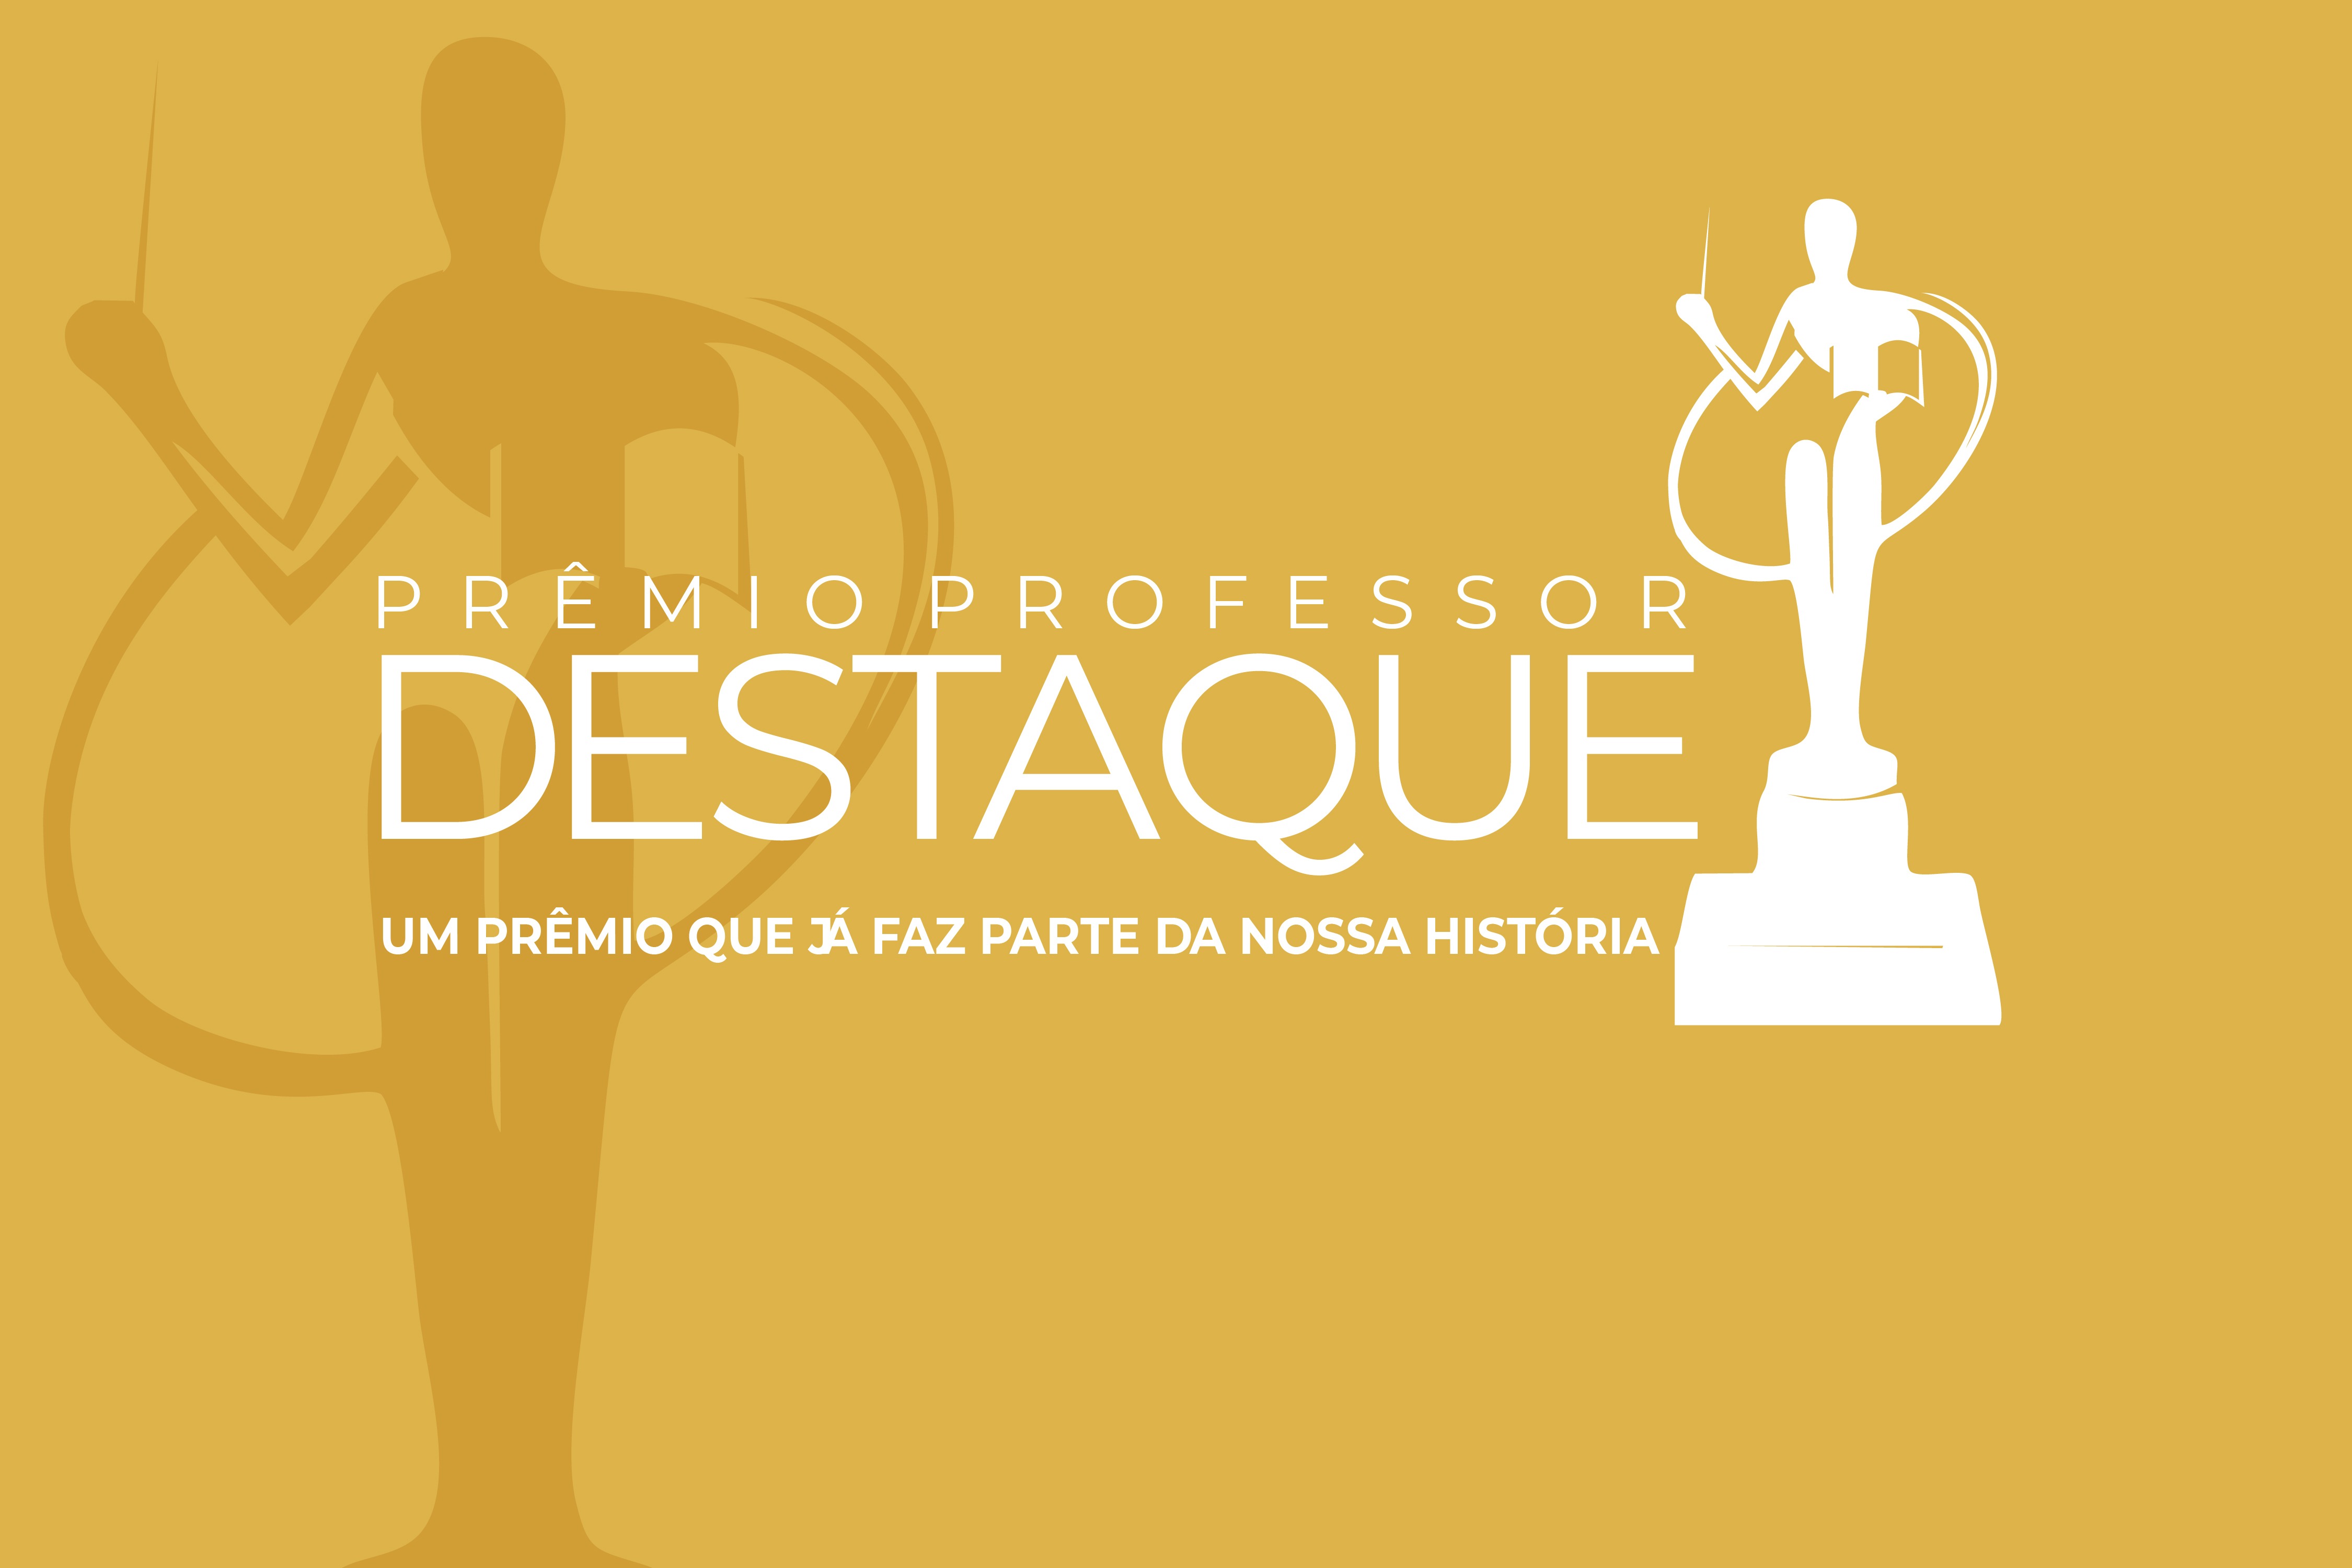 VIII Prêmio Professor Destaque será realizado nesta sexta-feira